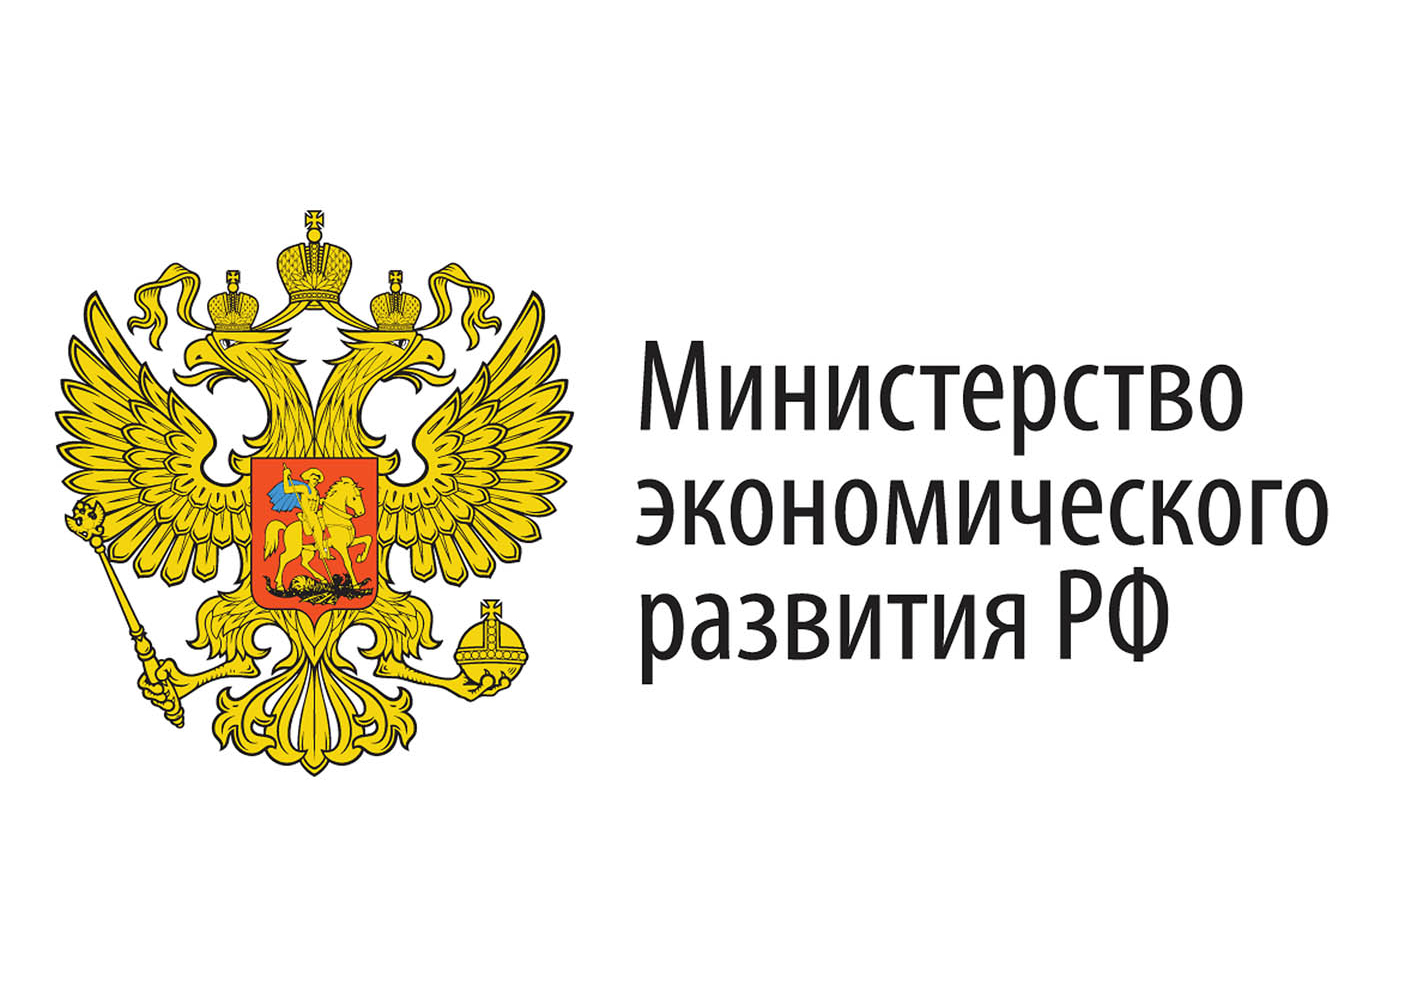 Создание ОЭЗ в Новгородской области одобрено Правительственной комиссией